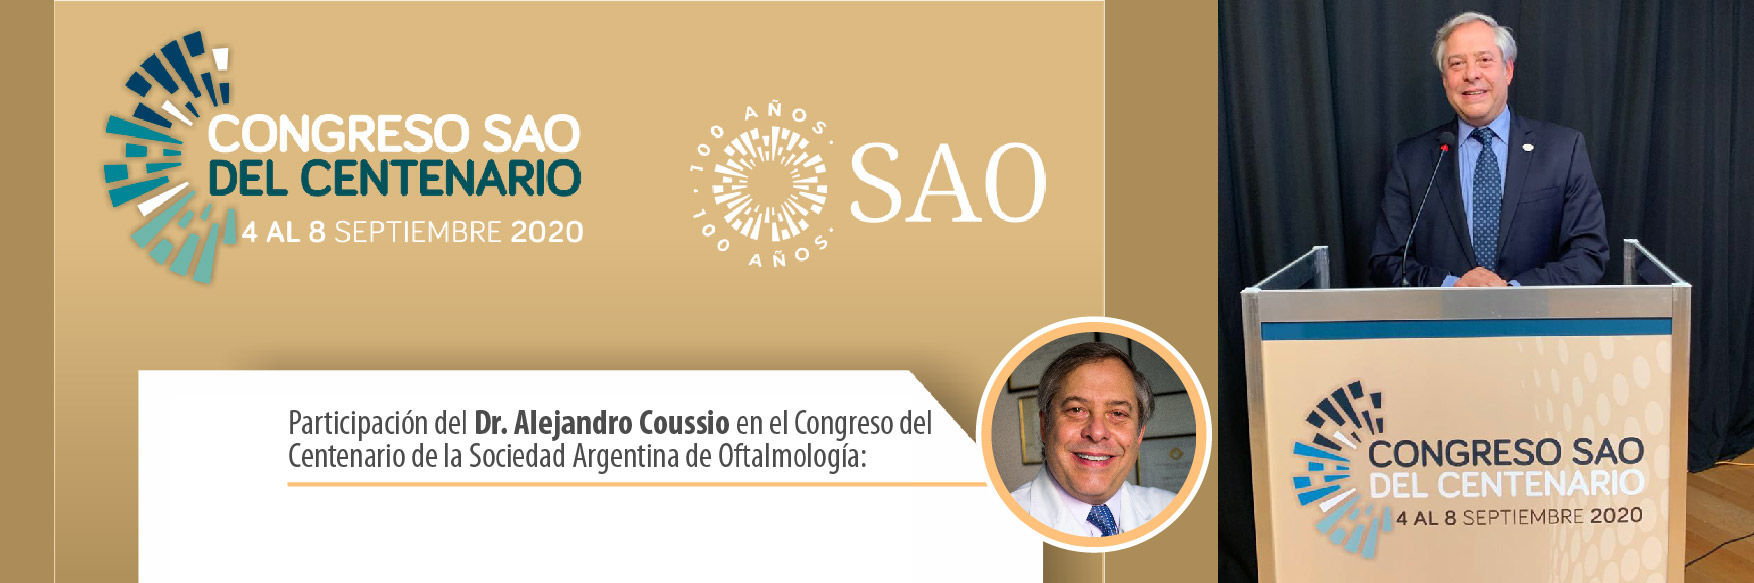 Congreso del Centenario de la Sociedad Argentina de Oftalmología 2020